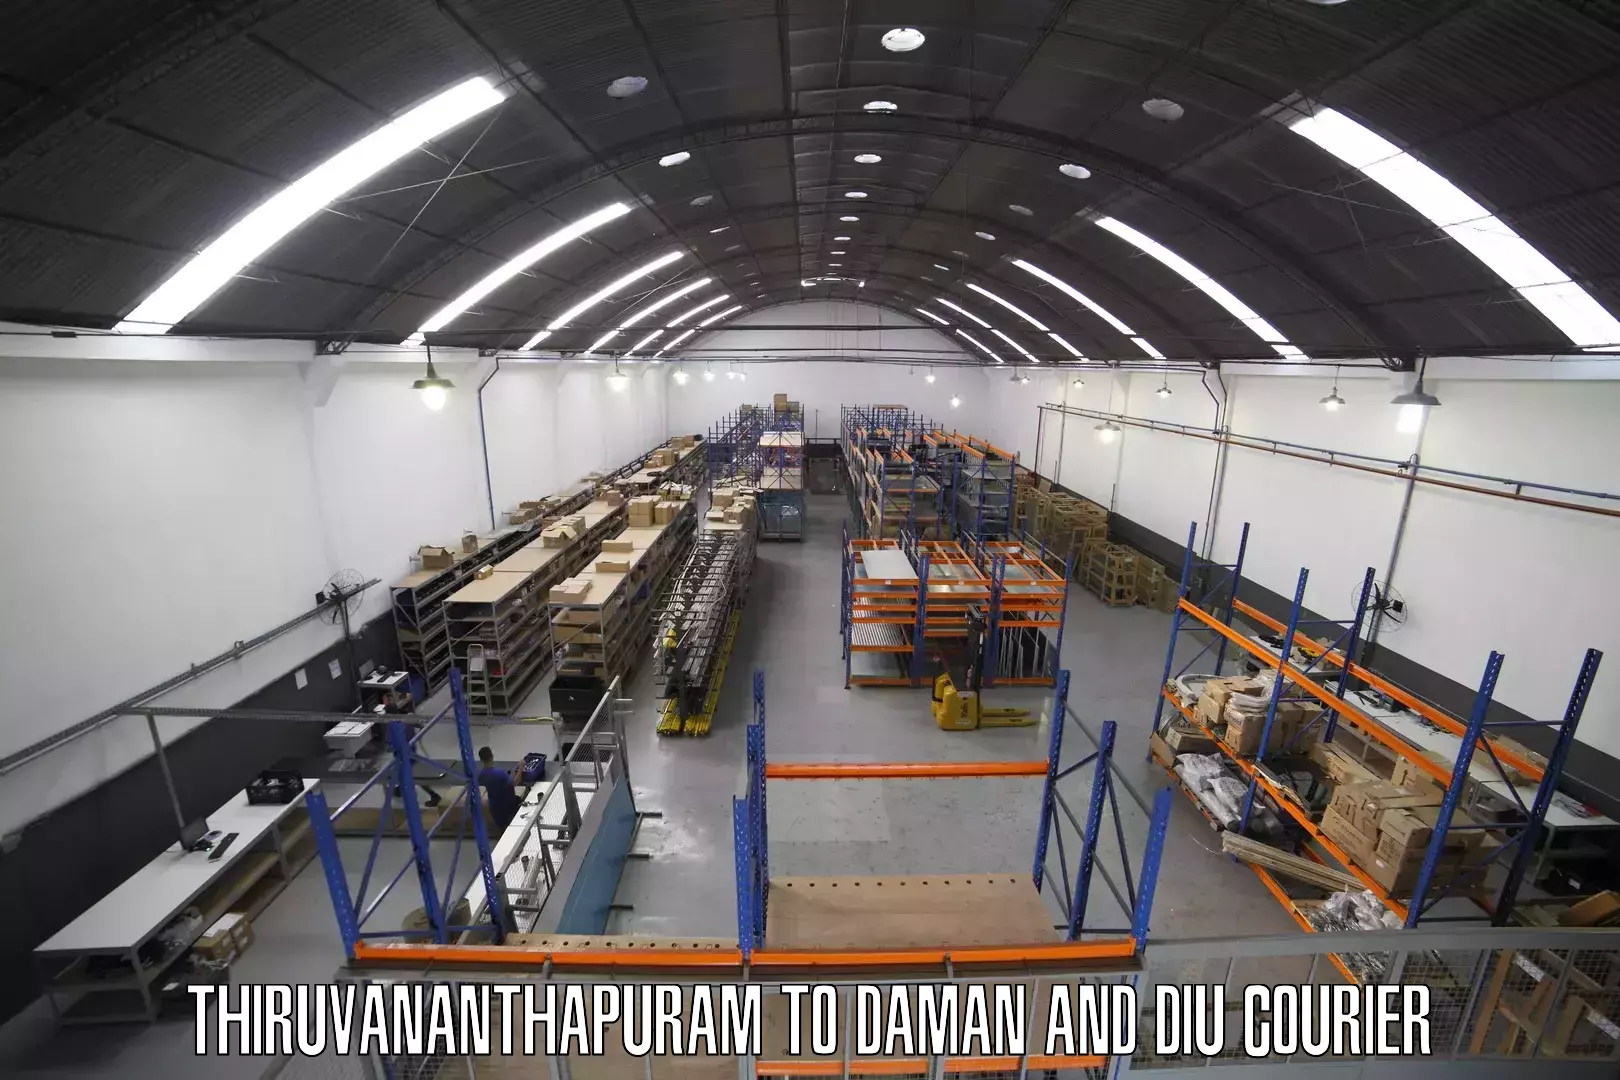 Express courier capabilities Thiruvananthapuram to Diu